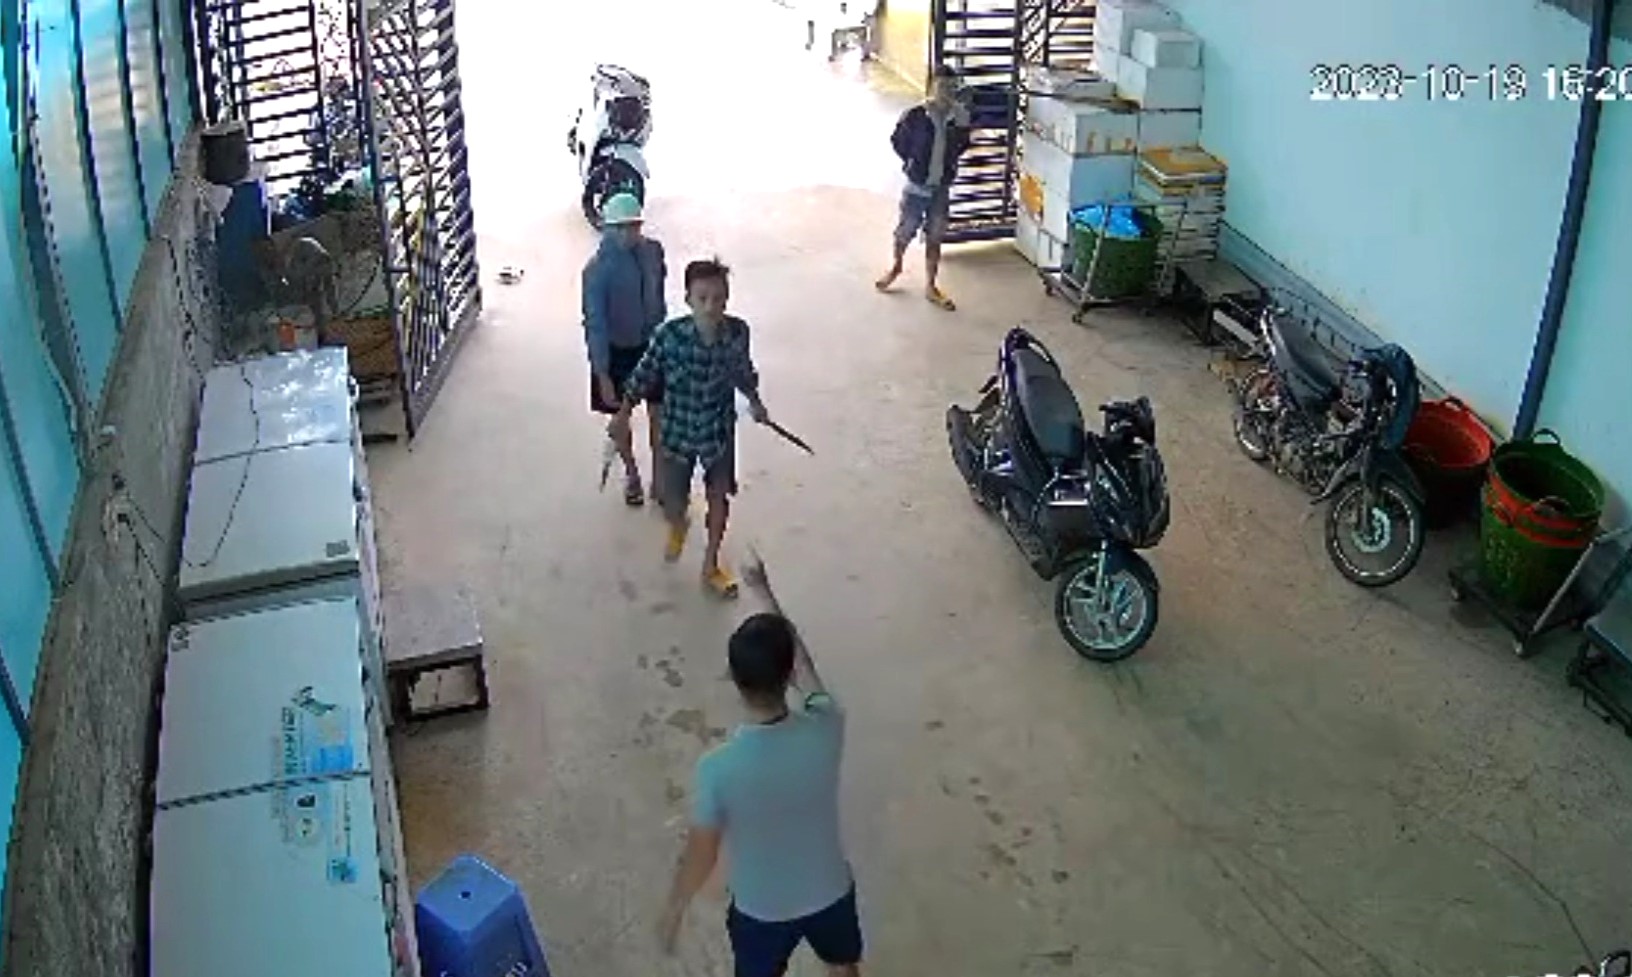 Thanh niên tên Quang 2 tay cầm 2 con dao đuổi chém nạn nhân